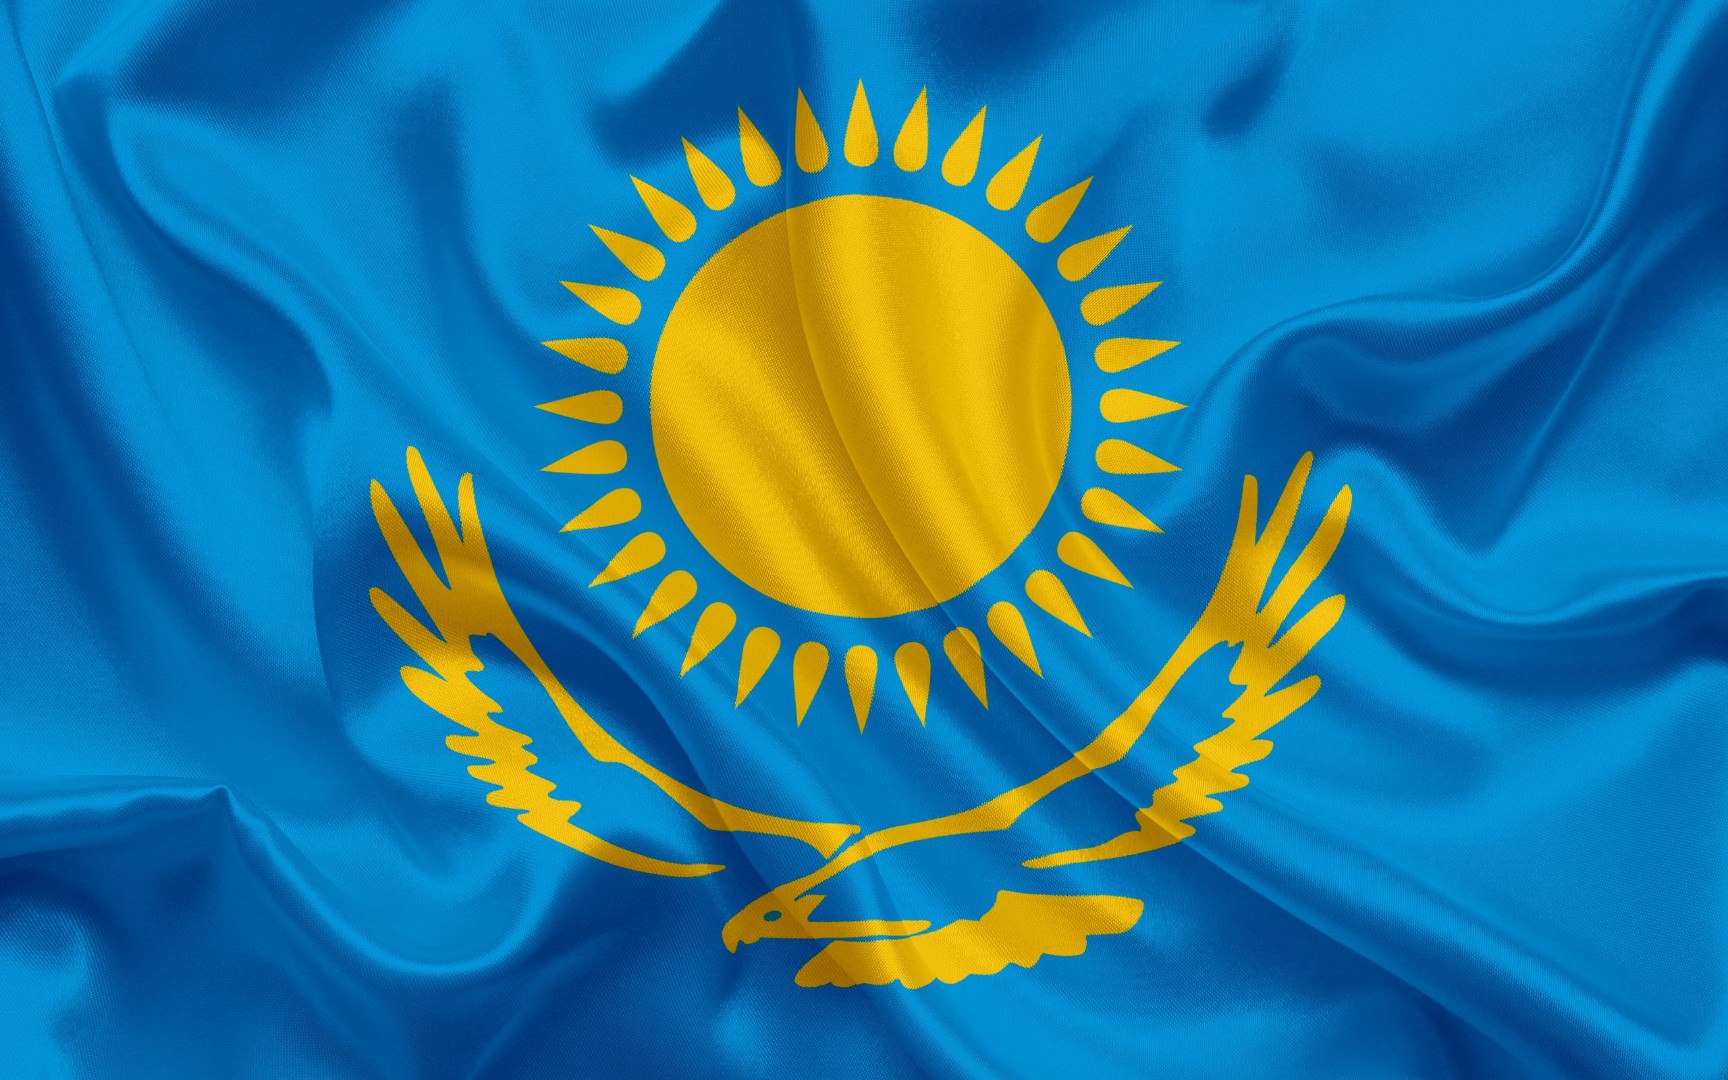 Продкорпорация сформировала фуражный фонд в объеме 235 тыс. тонн в Казахстане